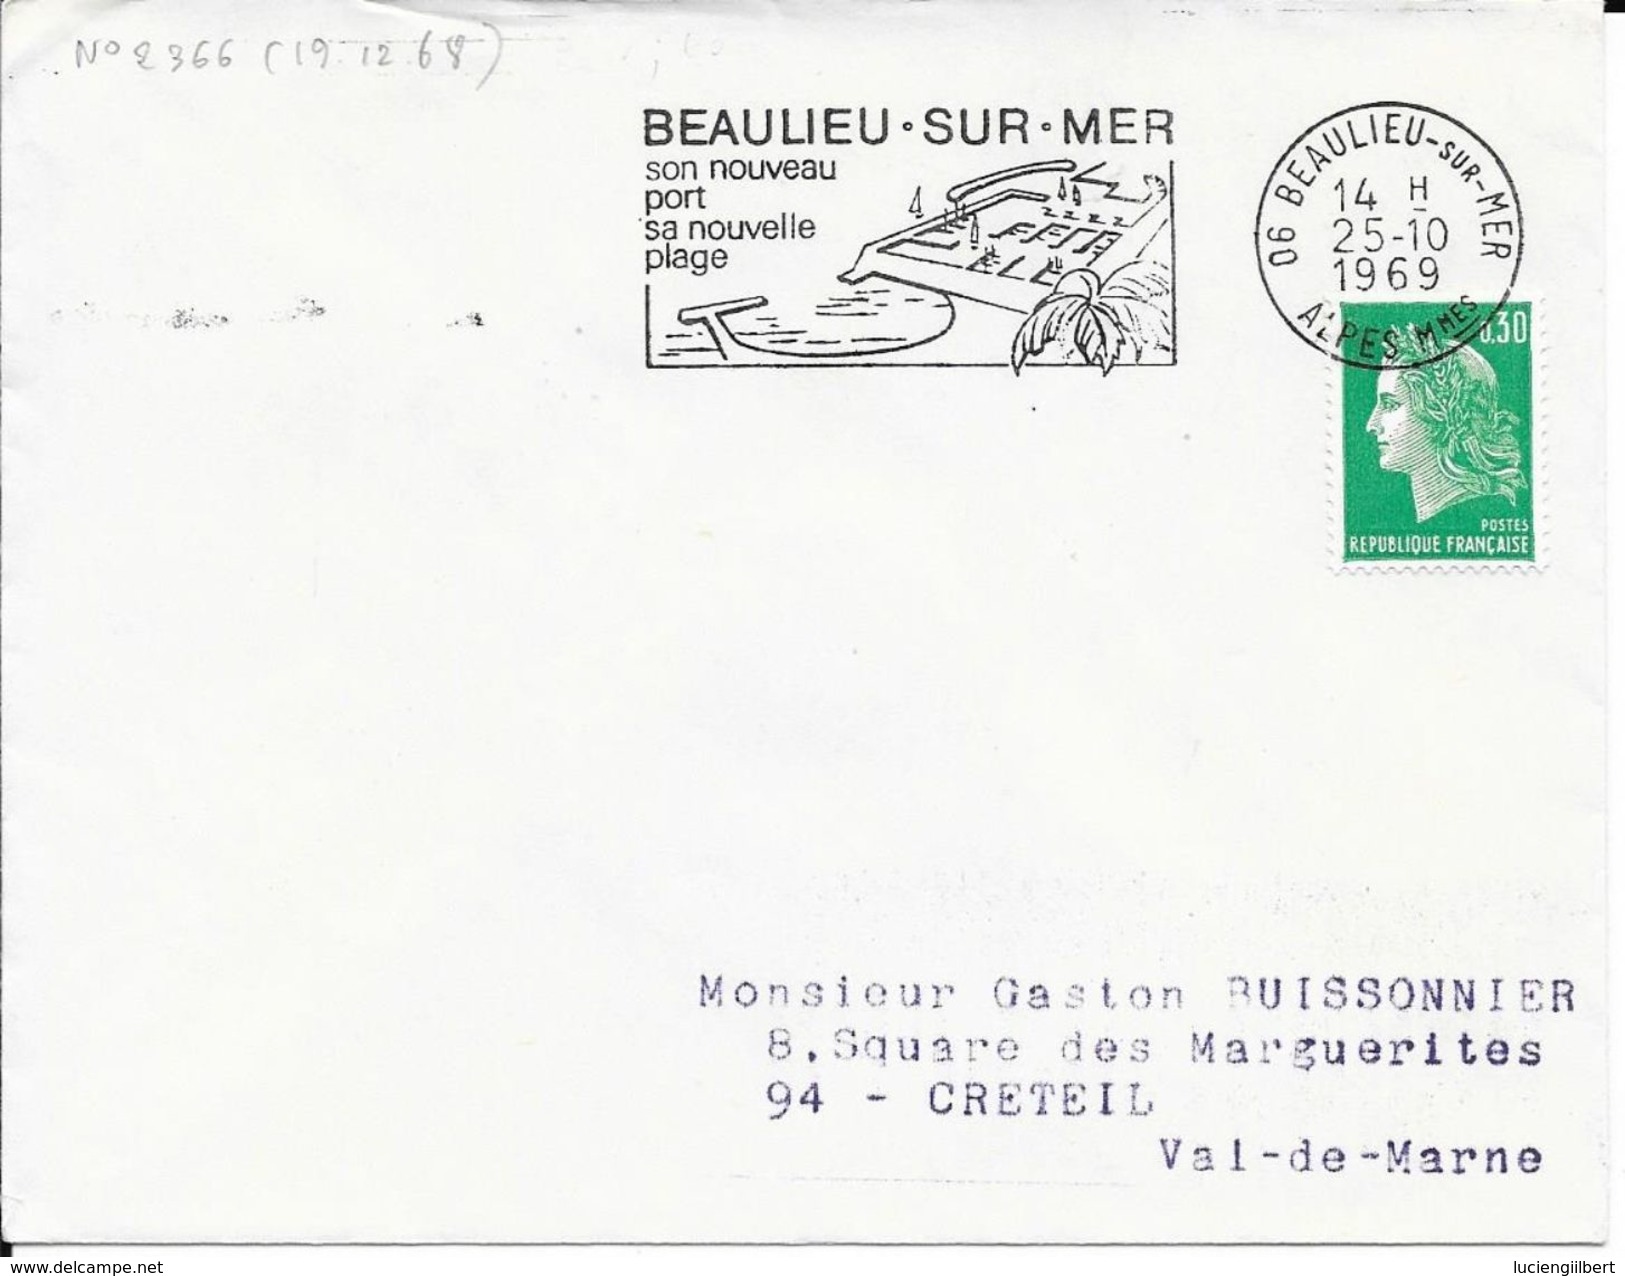 ALPES MARITIME 06 -  BEAULIEU SUR MER   - FLAMME N° 2366  - VOIR DESCRIPTION    1969  BELLE FRAPPE - Mechanical Postmarks (Advertisement)